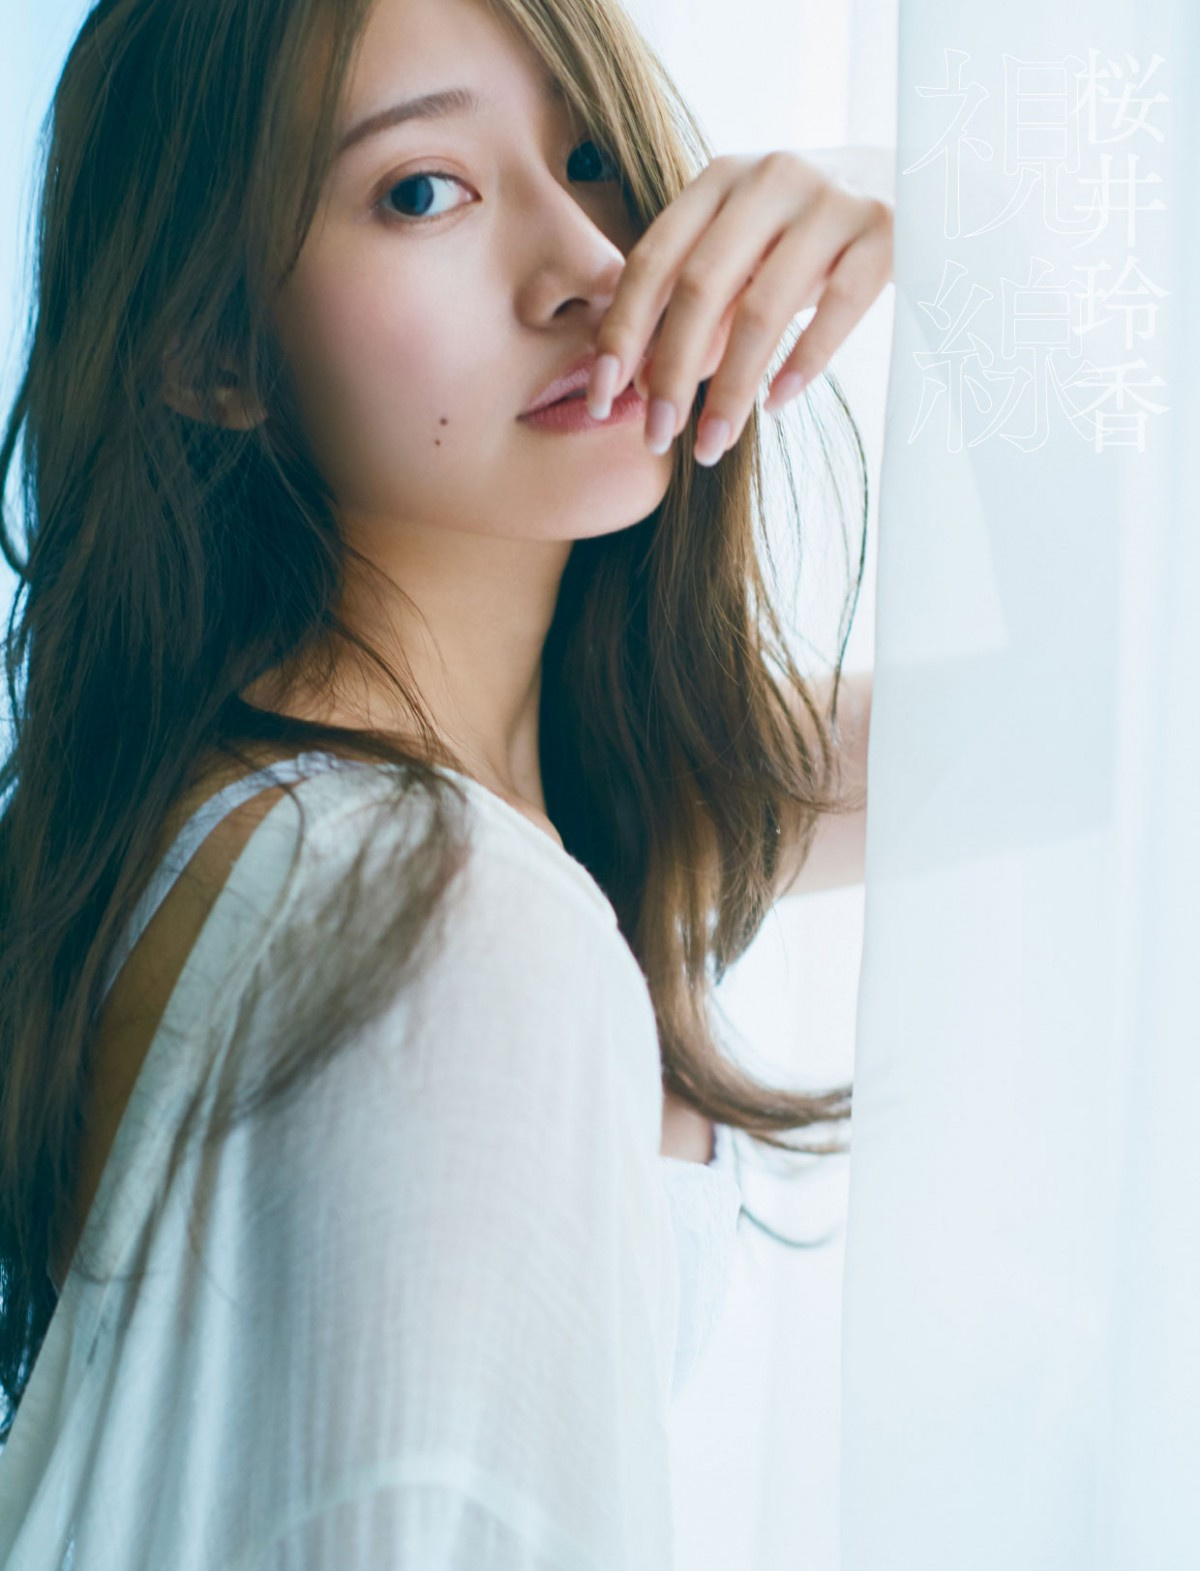 桜井玲香 写真集3パターン表紙公開 セクシー ナチュラル 幻想的な魅力発揮 Oricon News